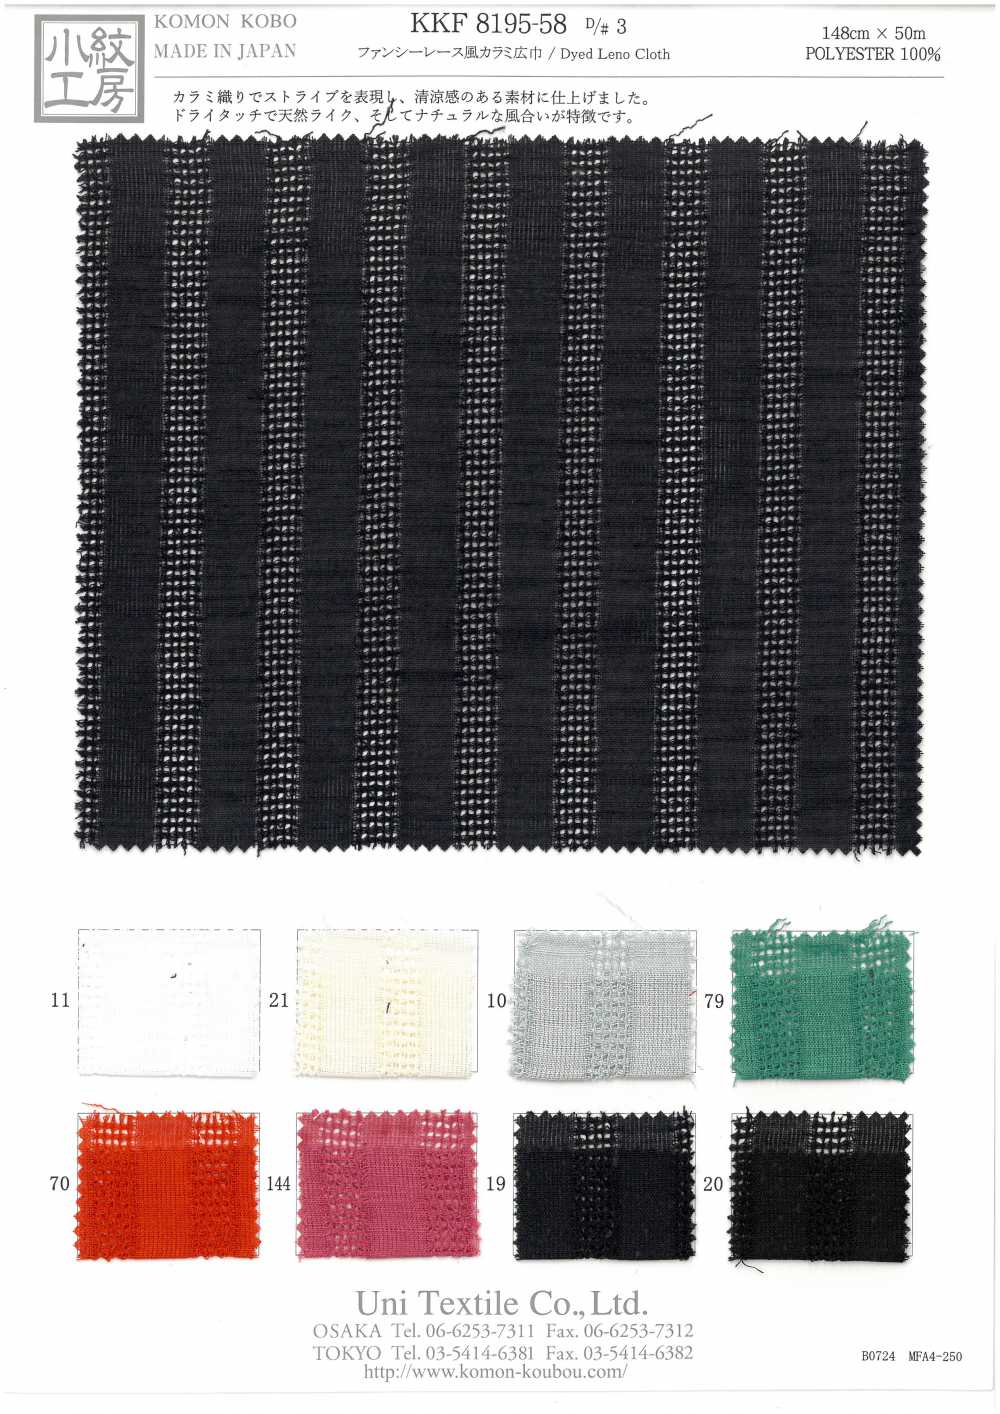 KKF8195-58-D/3 Fancy Lace Style Leno Weave[Textile / Fabric] Uni Textile